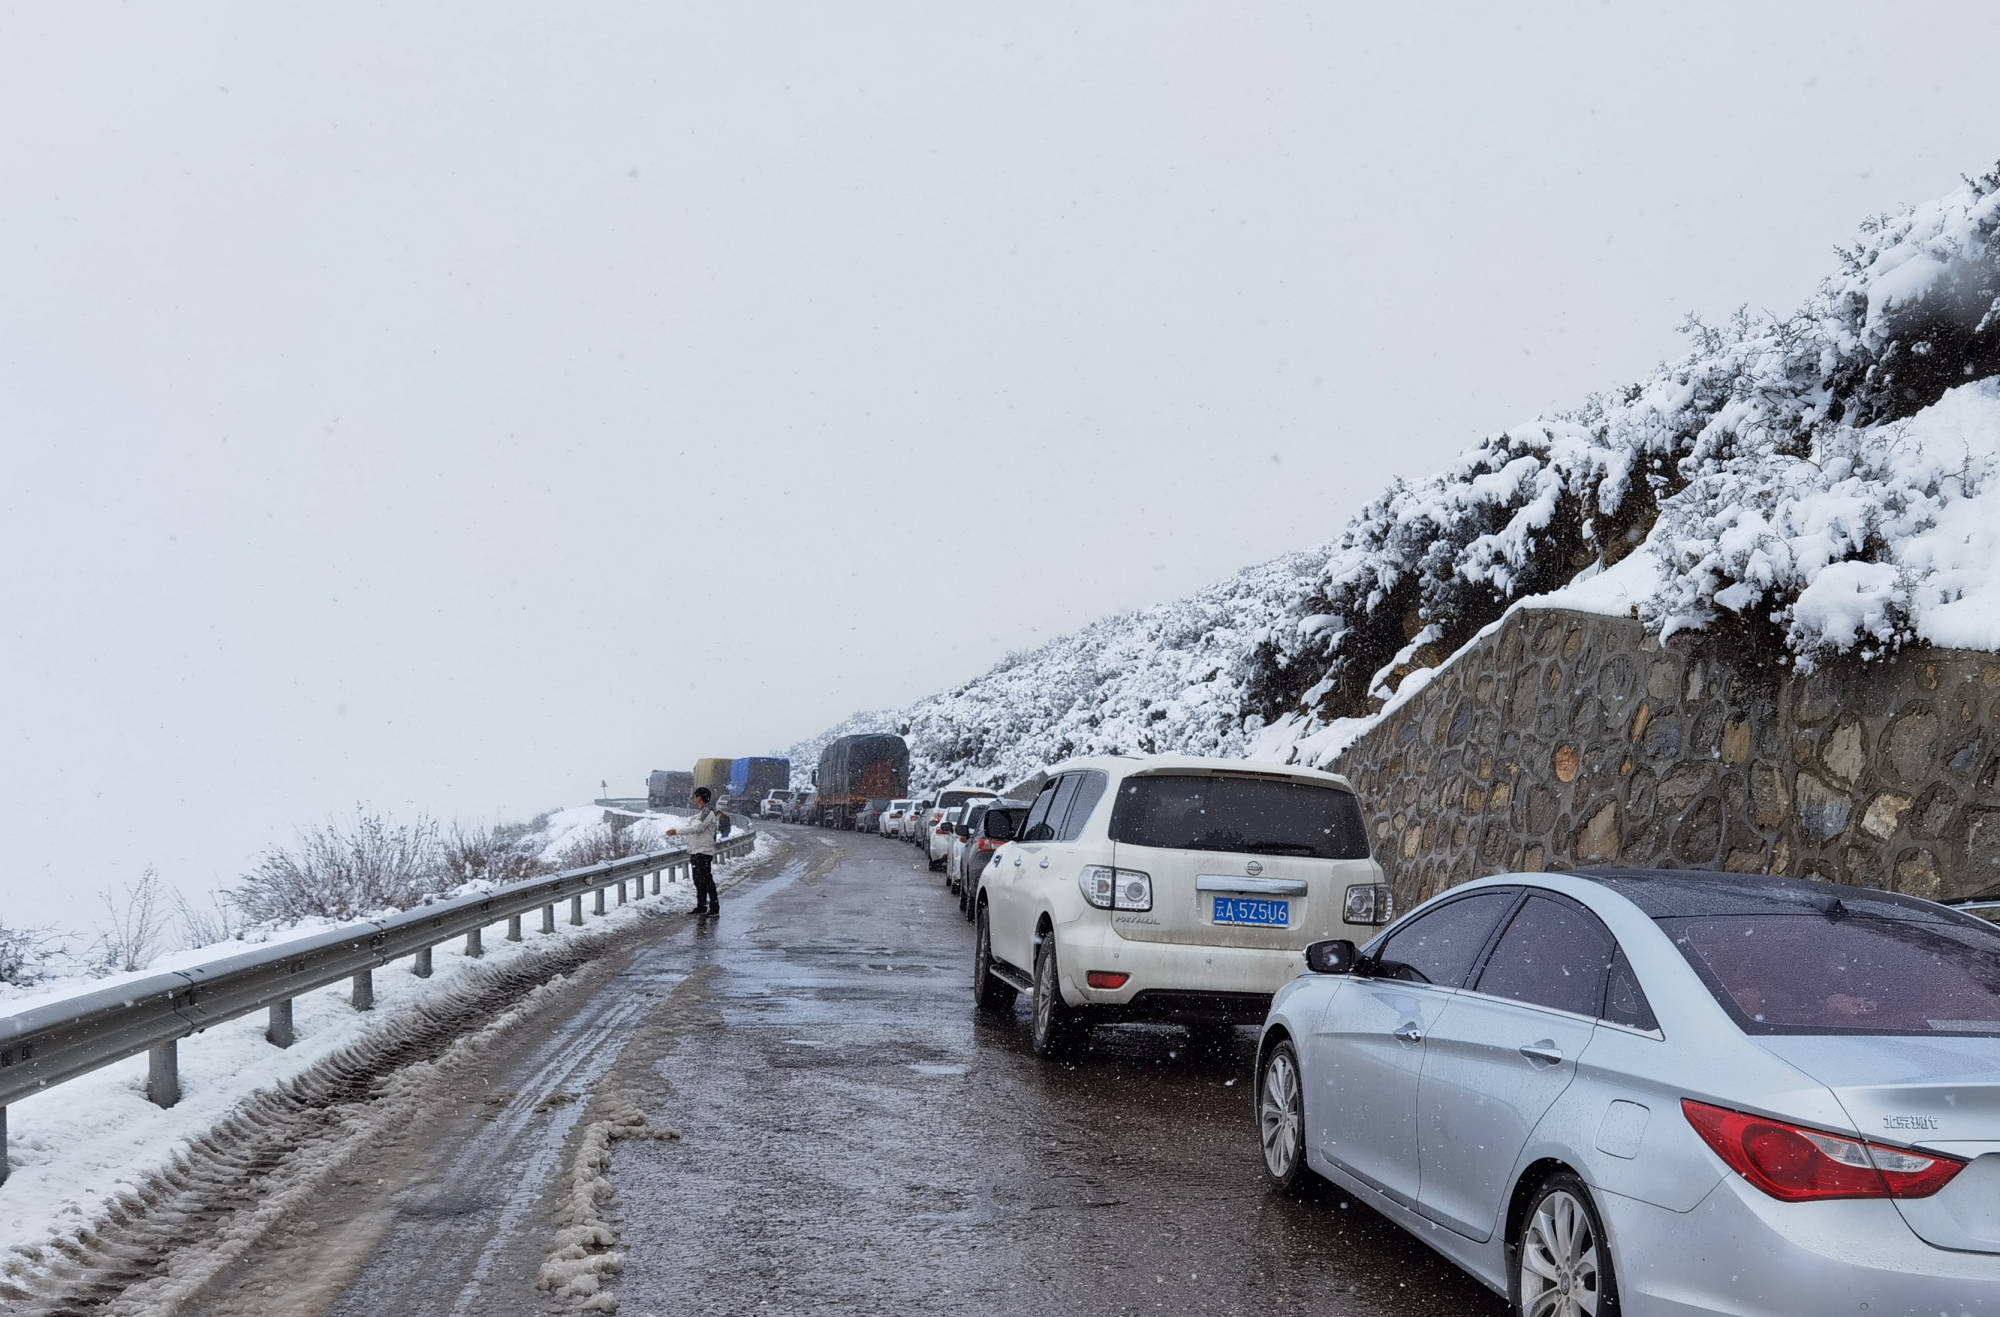 川藏g318国道最新路况,只要不遇雨雪天,轿车一路都能走